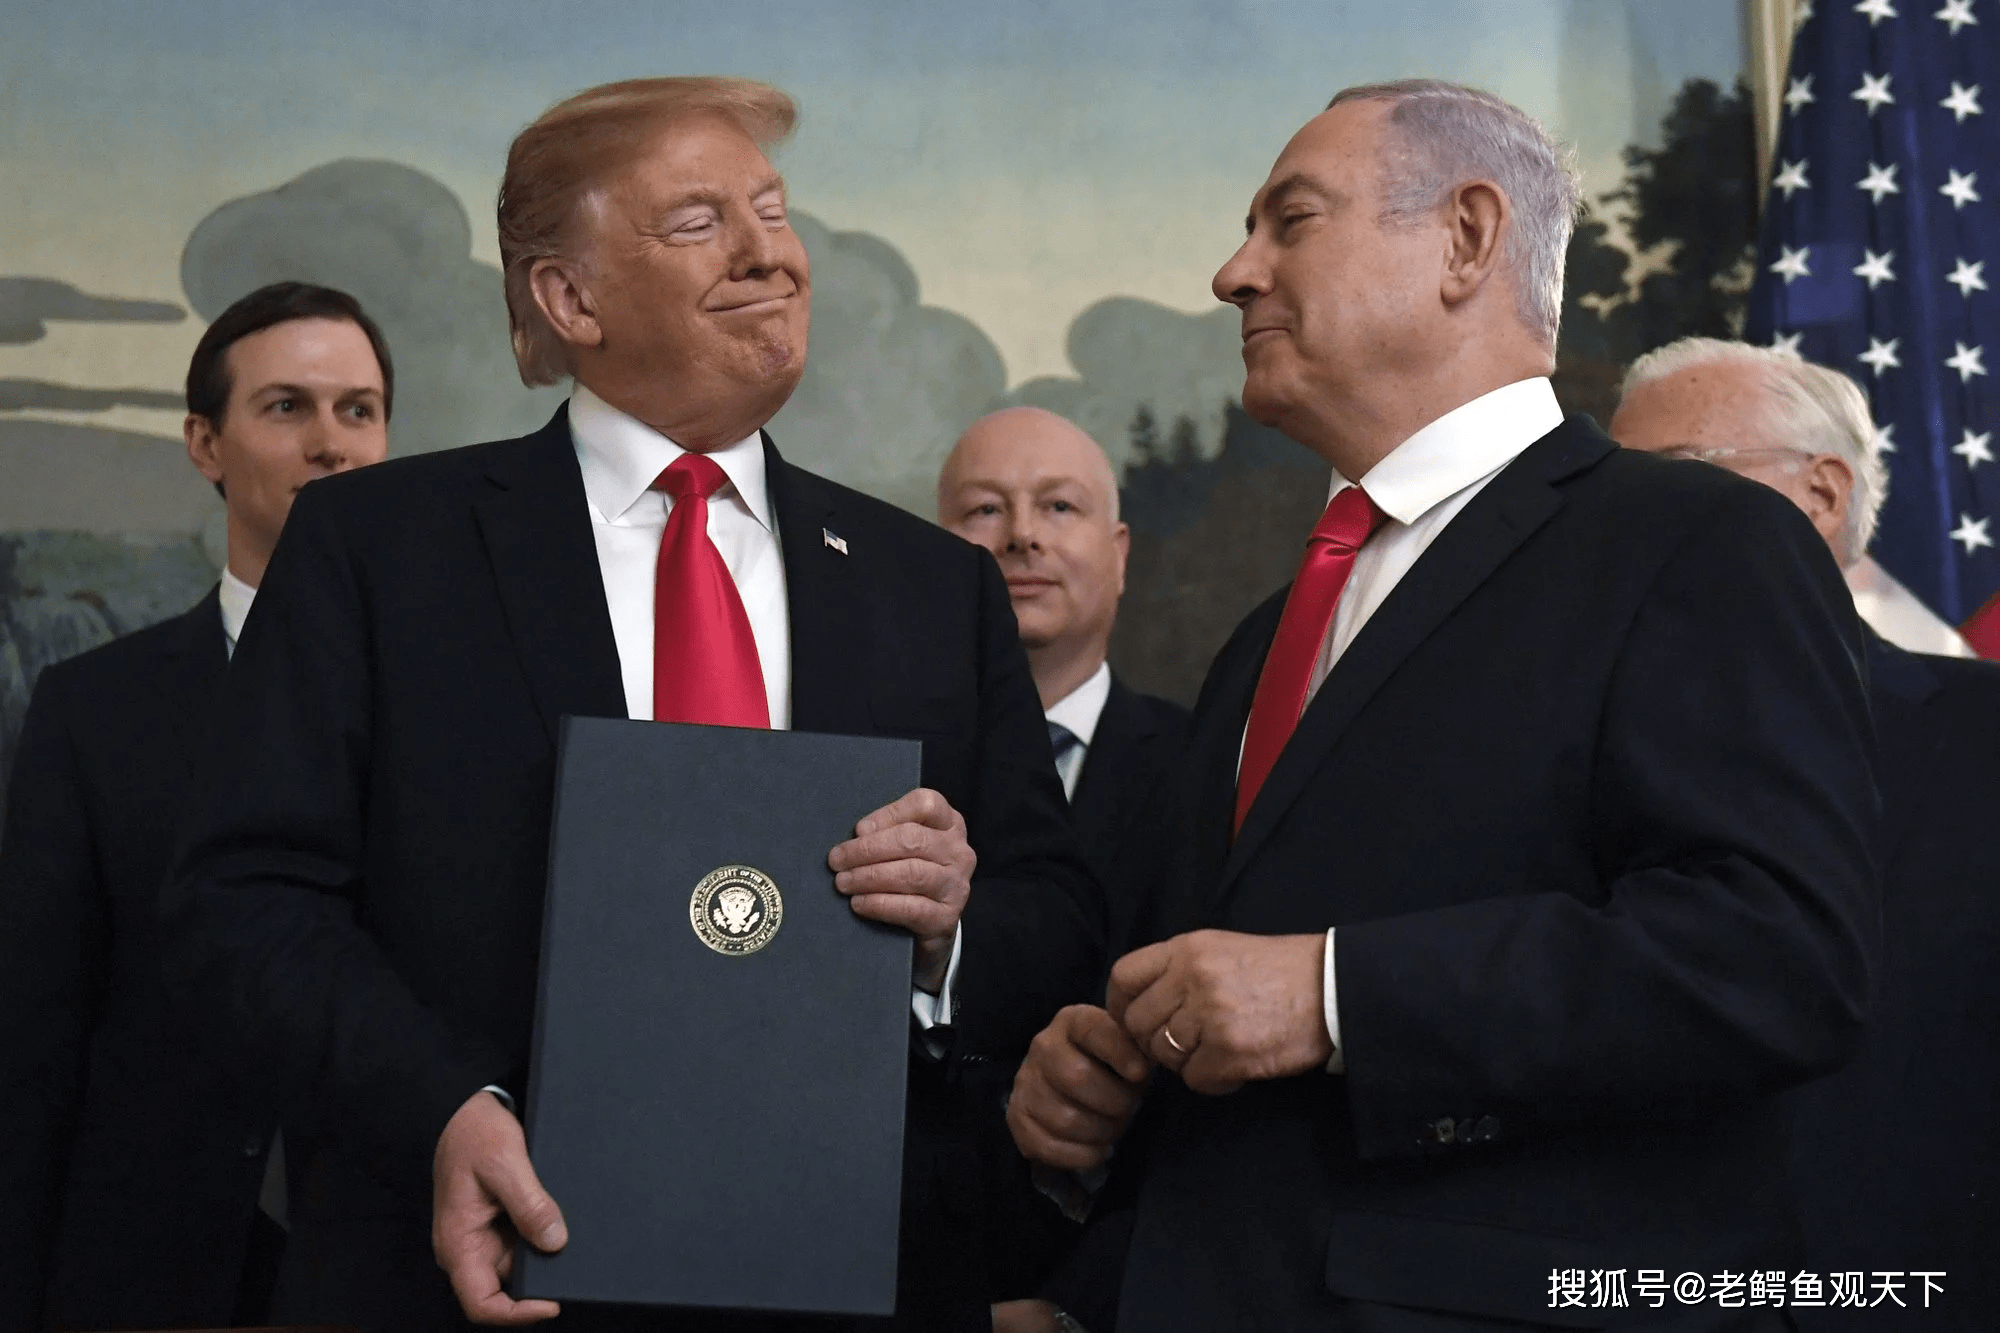 向拜登道贺的同时,发推感谢特朗普,以色列总理这招甚妙